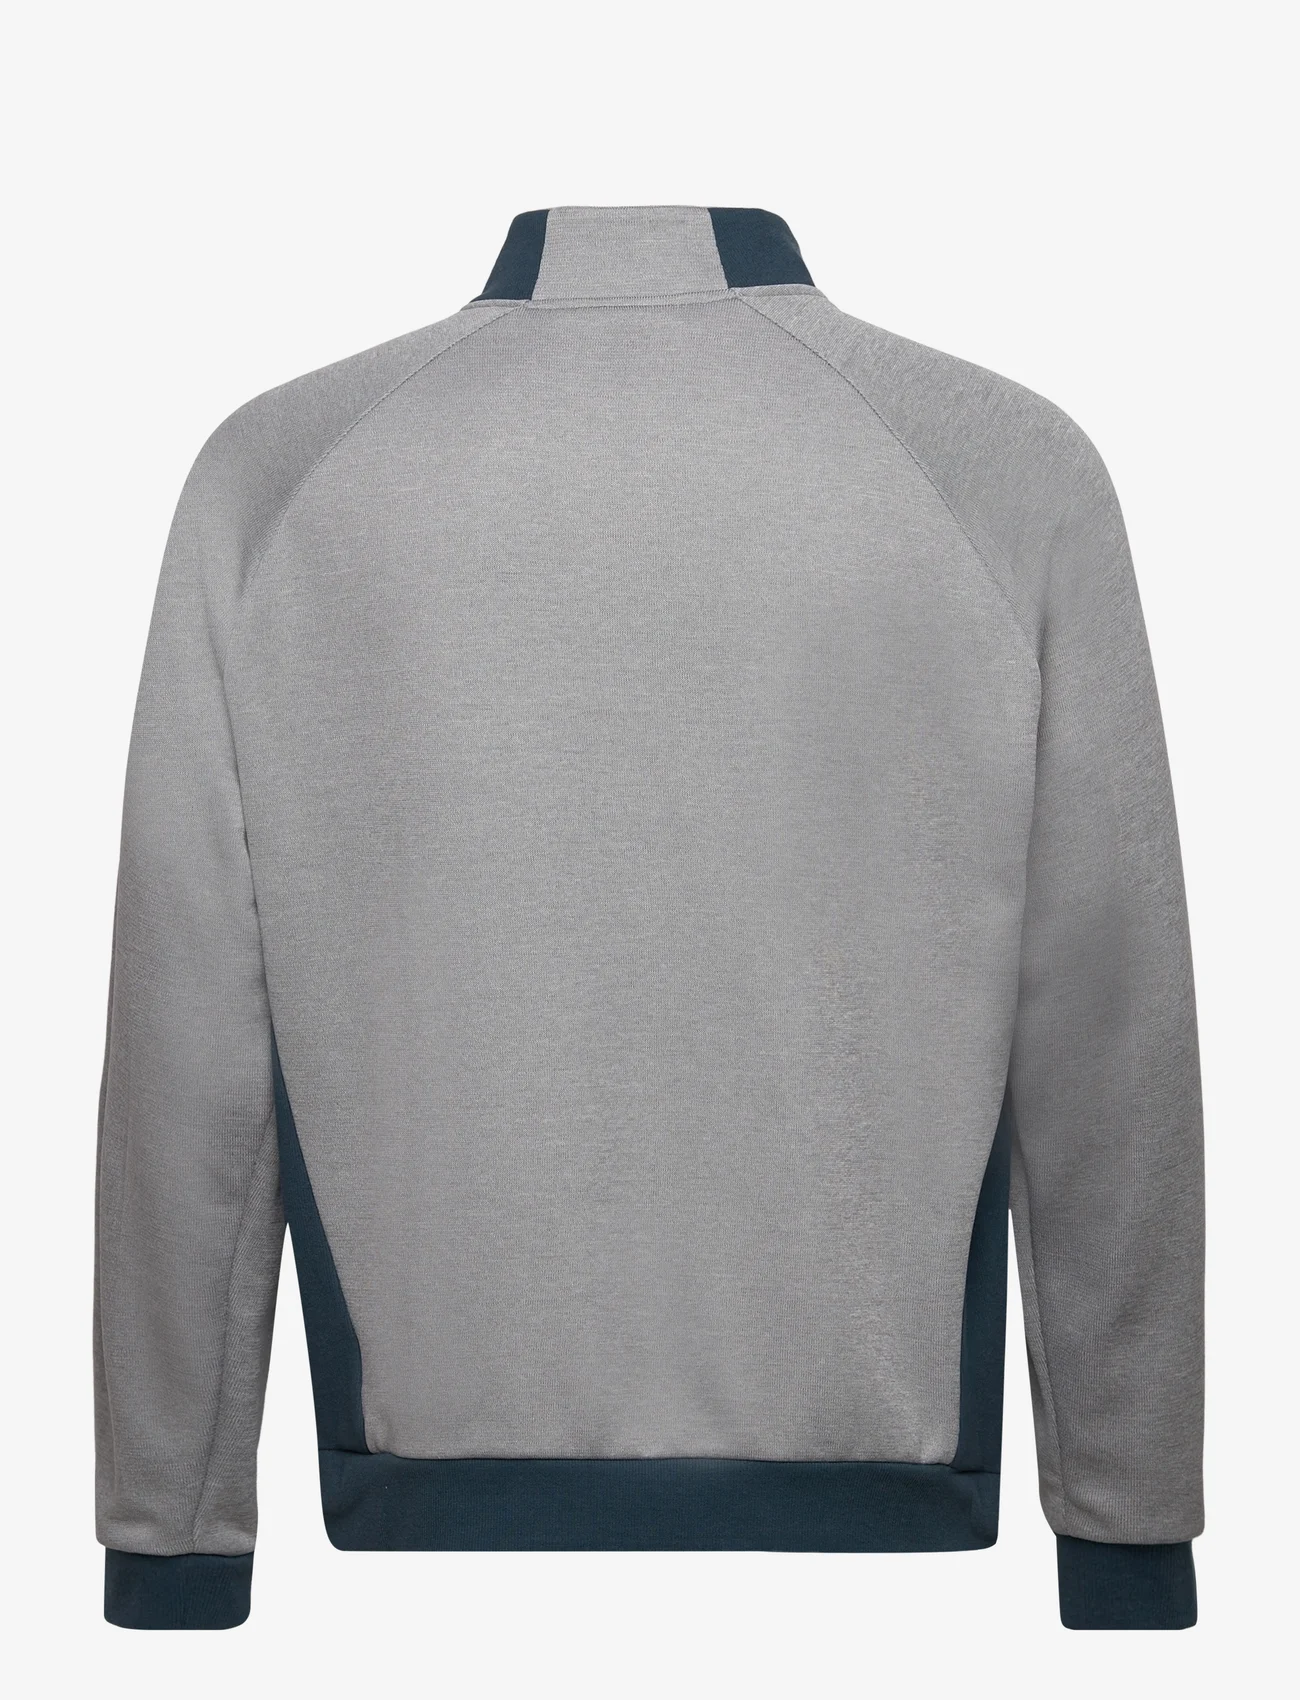 adidas Golf - DWR Quarter-Zip Sweatshirt - mid layer jackets - grethr/gretwo/arcngt - 1